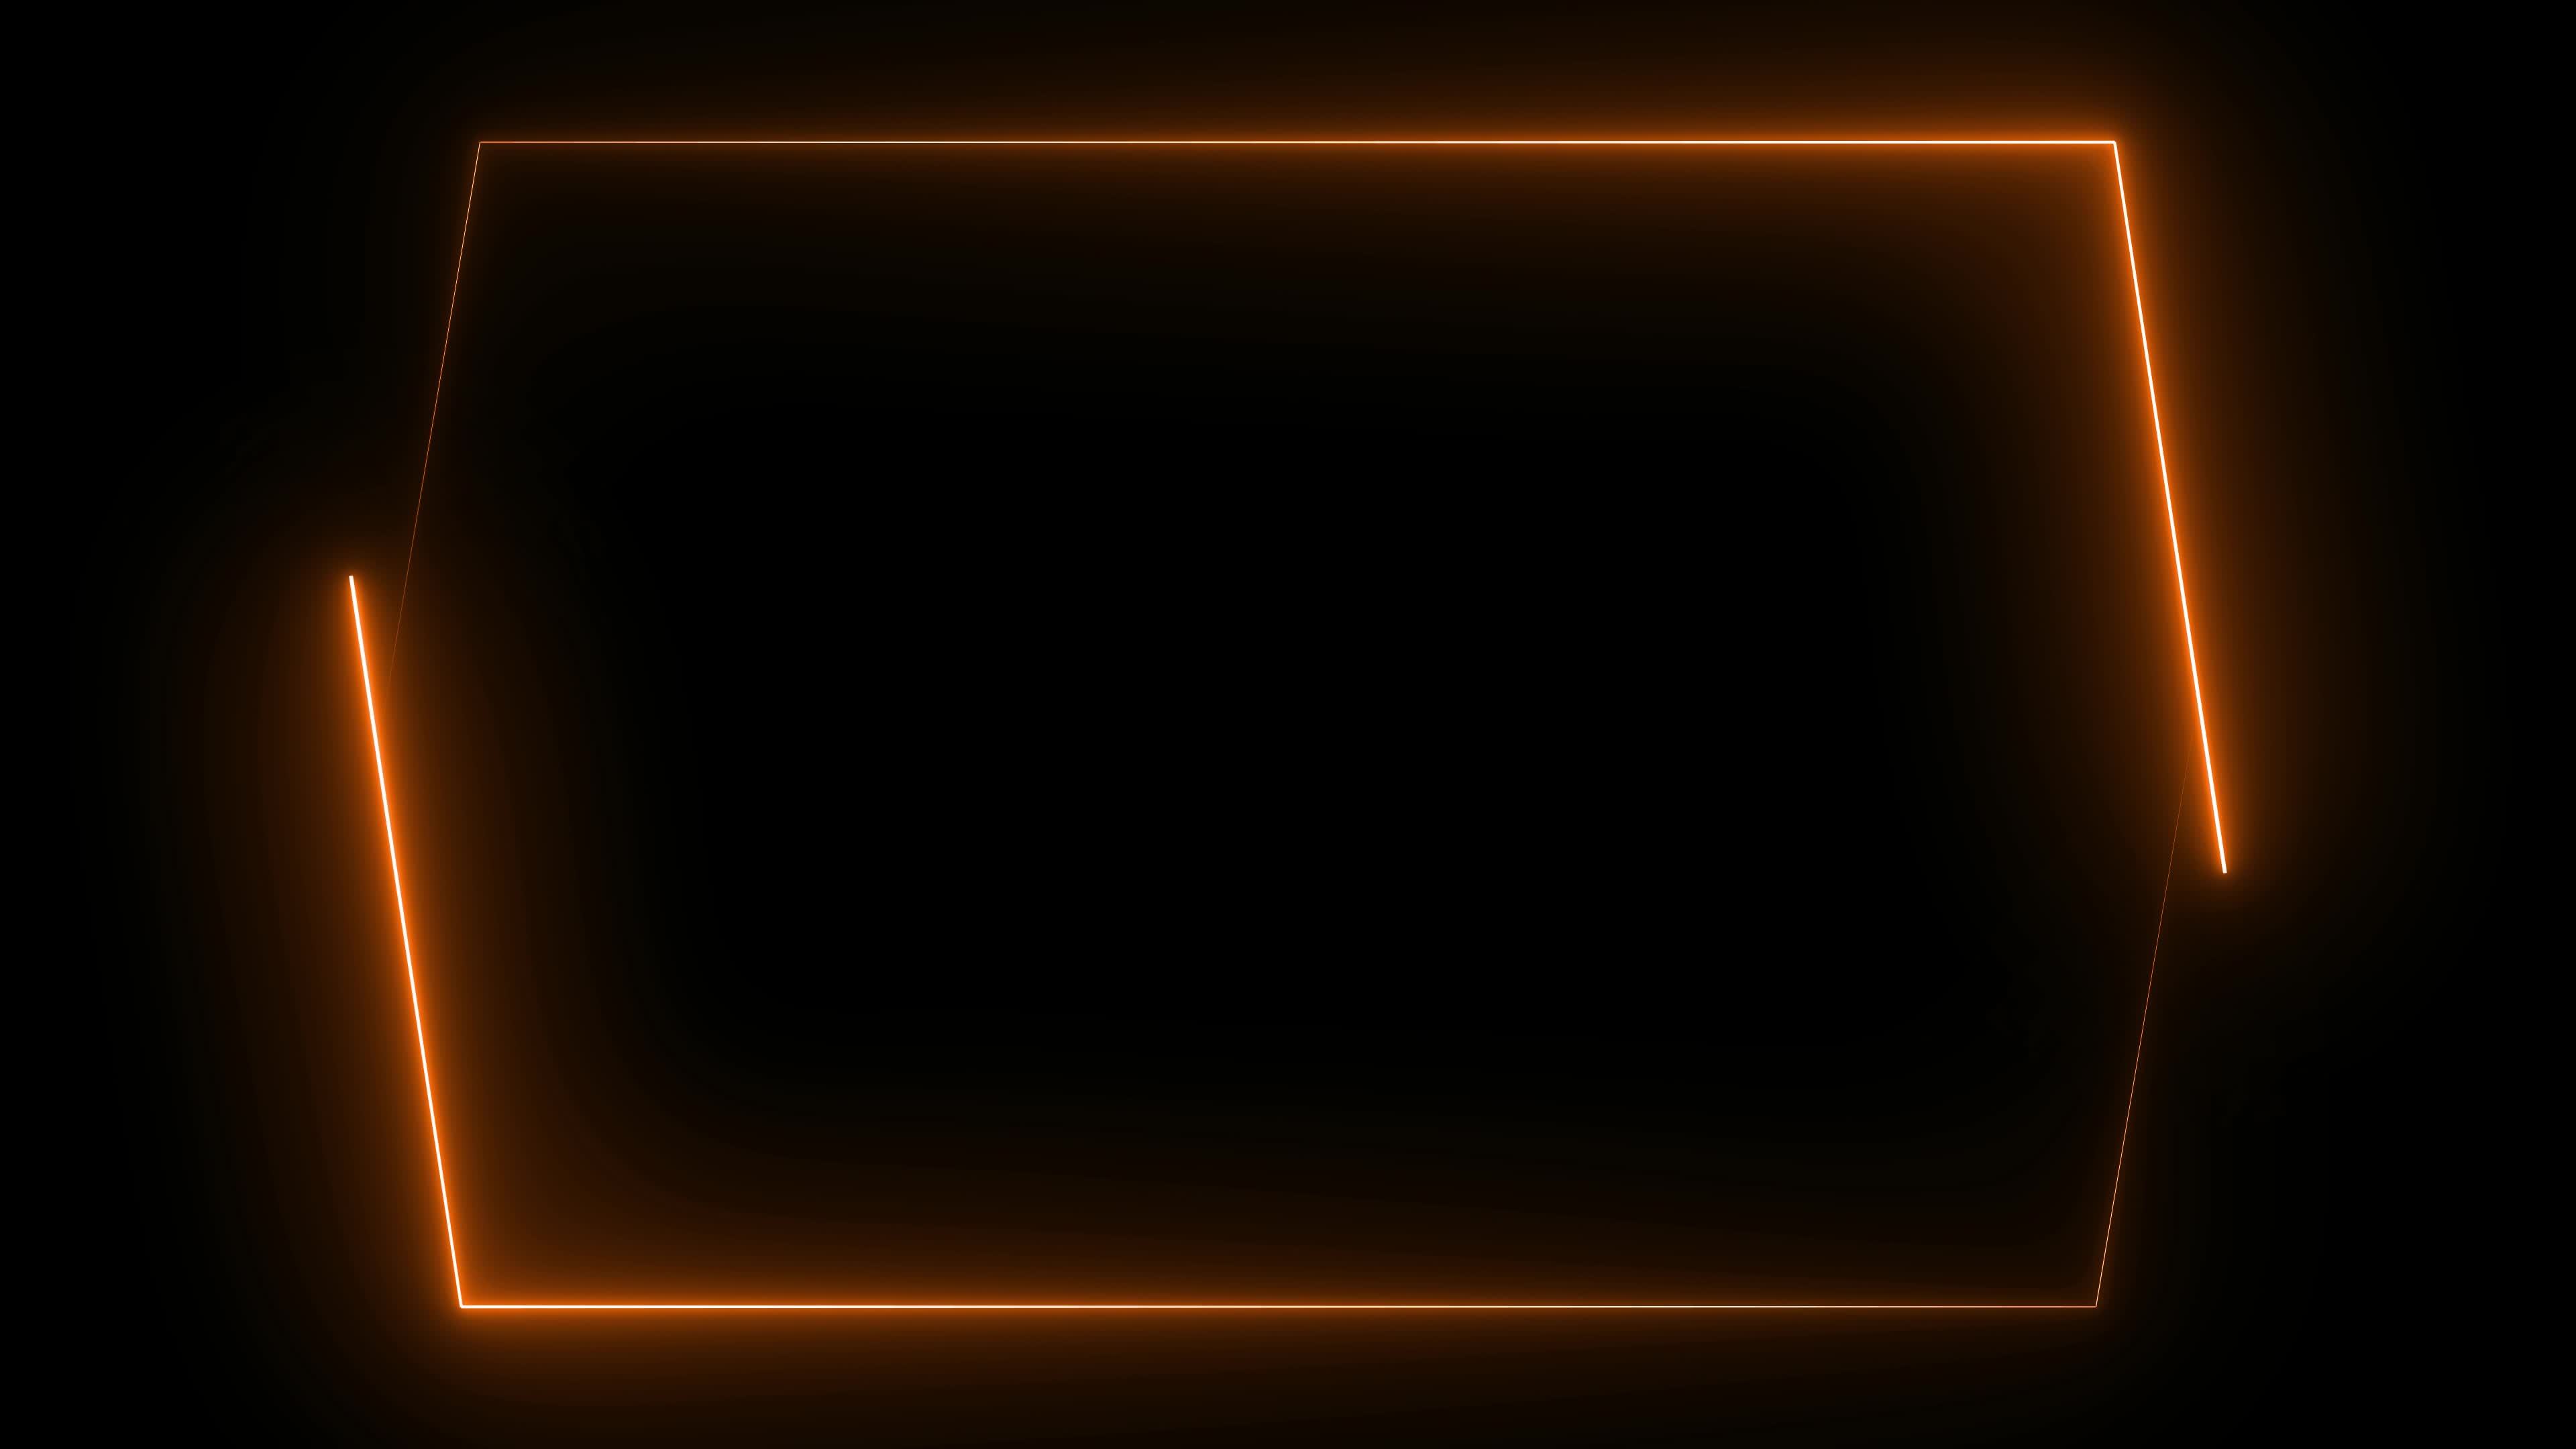 Tạo nên một không gian đầy bí ẩn và hiện đại với hình nền Orange Neon Frame Wallpaper. Chất lượng hình ảnh cực kỳ sắc nét, kèm theo đó là thiết kế đèn neon cam tạo nên cảm giác ấn tượng và lôi cuốn.